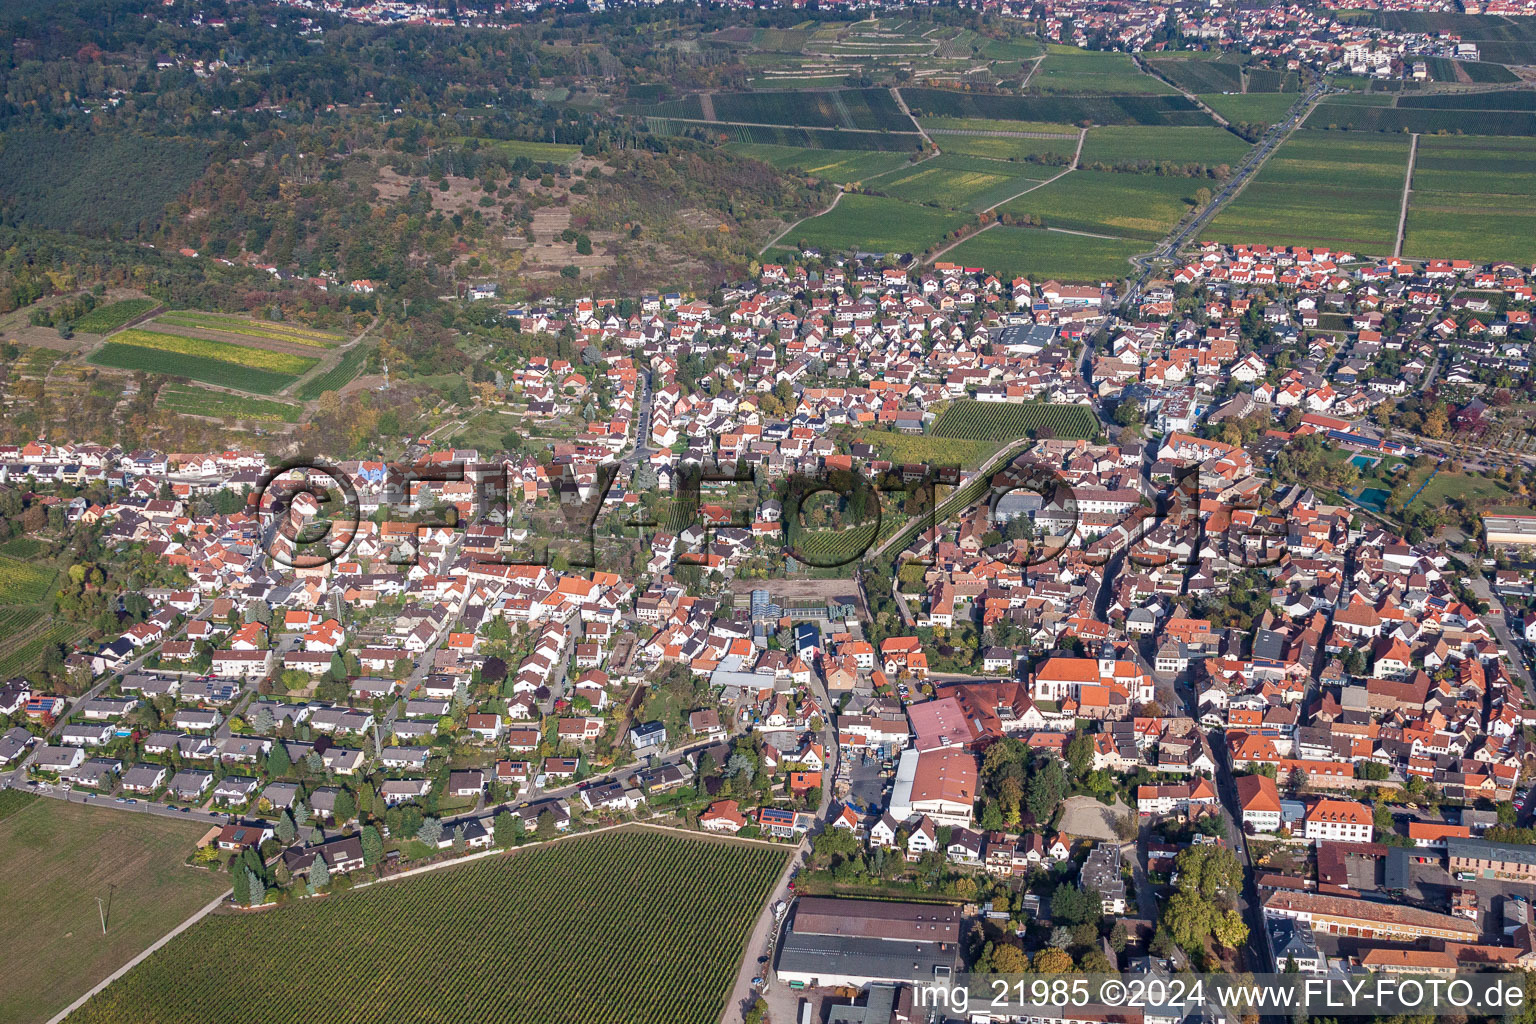 Luftbild von Ortsansicht der Straßen und Häuser der Wohngebiete in Wachenheim an der Weinstraße im Bundesland Rheinland-Pfalz, Deutschland